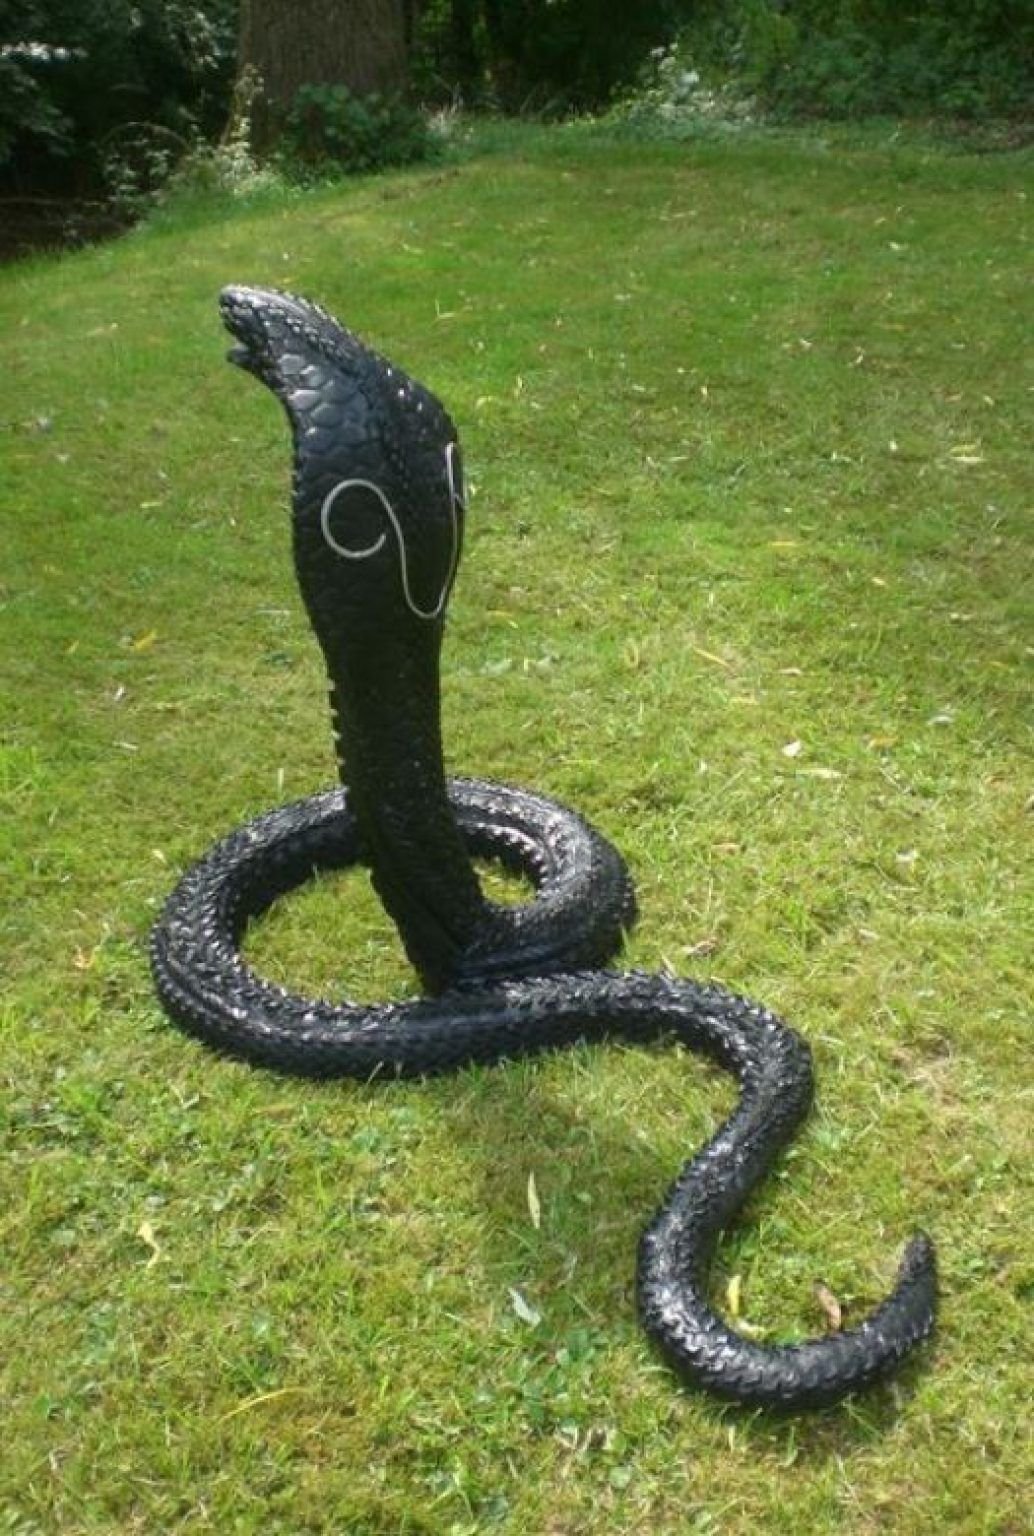 Из чего сделан змей